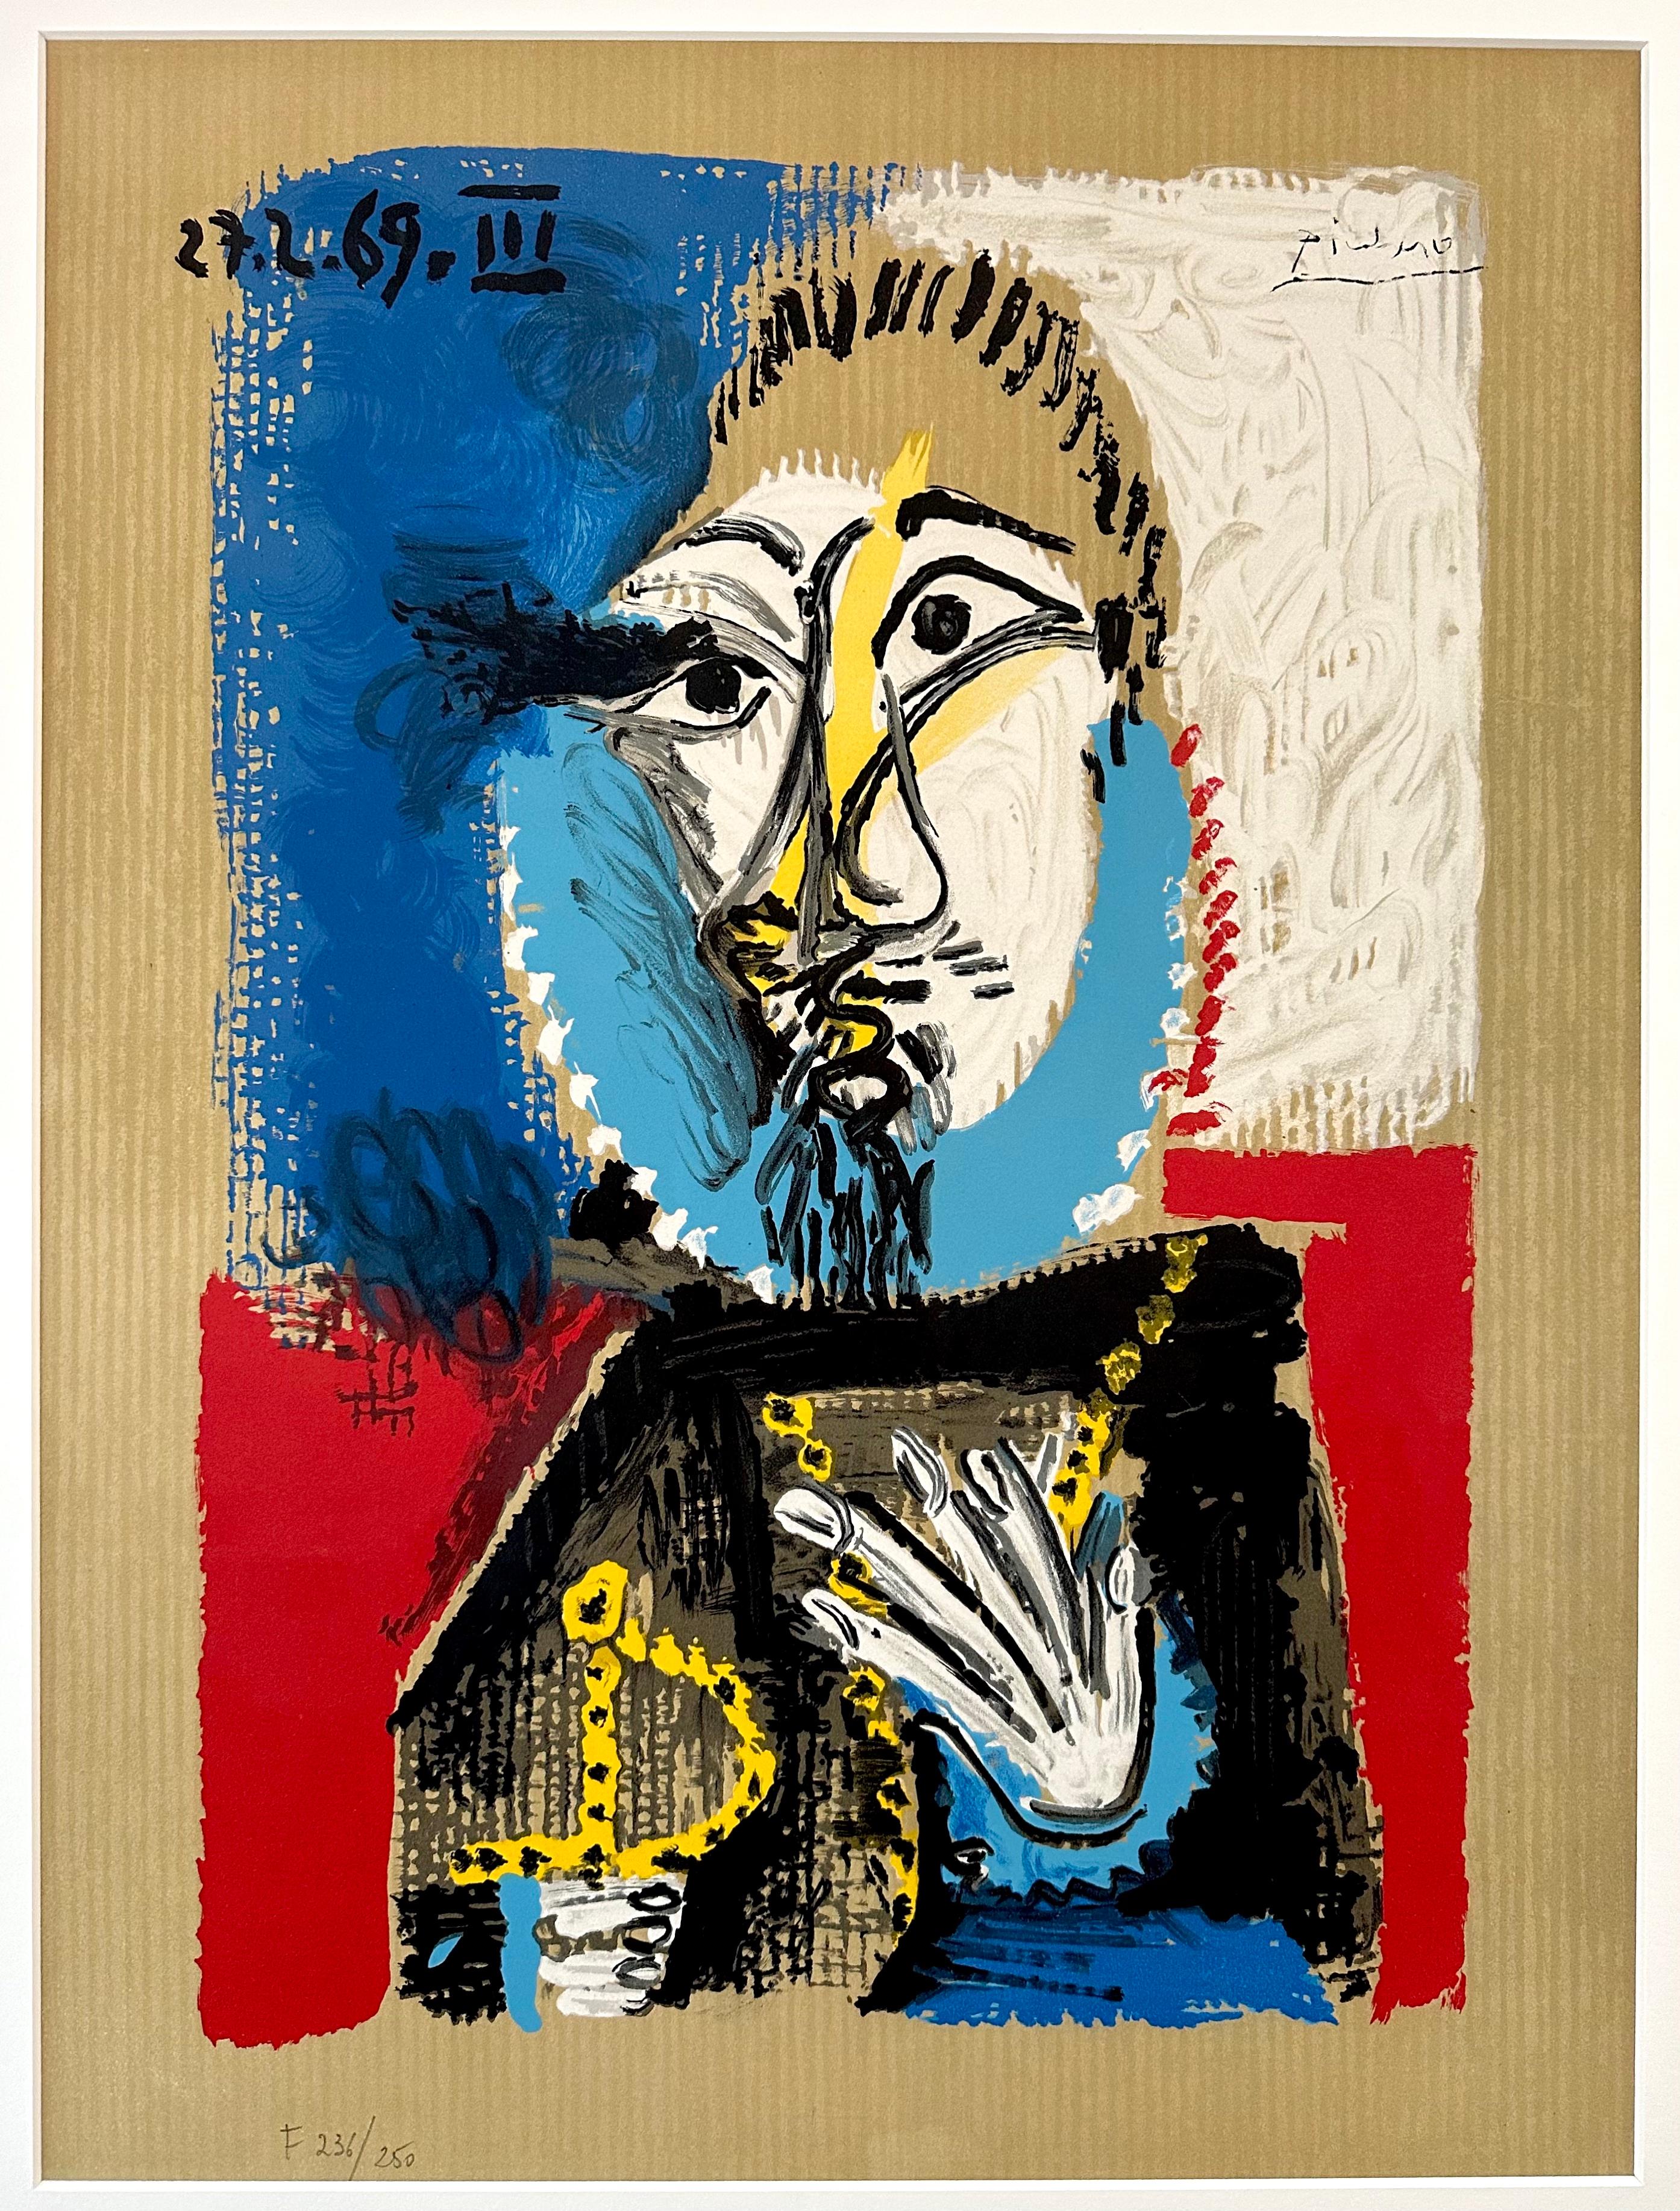 Pablo Picasso - Portrait Imaginaires 27.3.69 III
Lithographie en couleur de la série 'Portraits Imaginaires'.
Publié par Georges Salinas, 1970.
Edition : 250 pour la France (F) et 250 pour l'Amérique (A).
Signé dans la pierre, numéroté (236/ 250) au